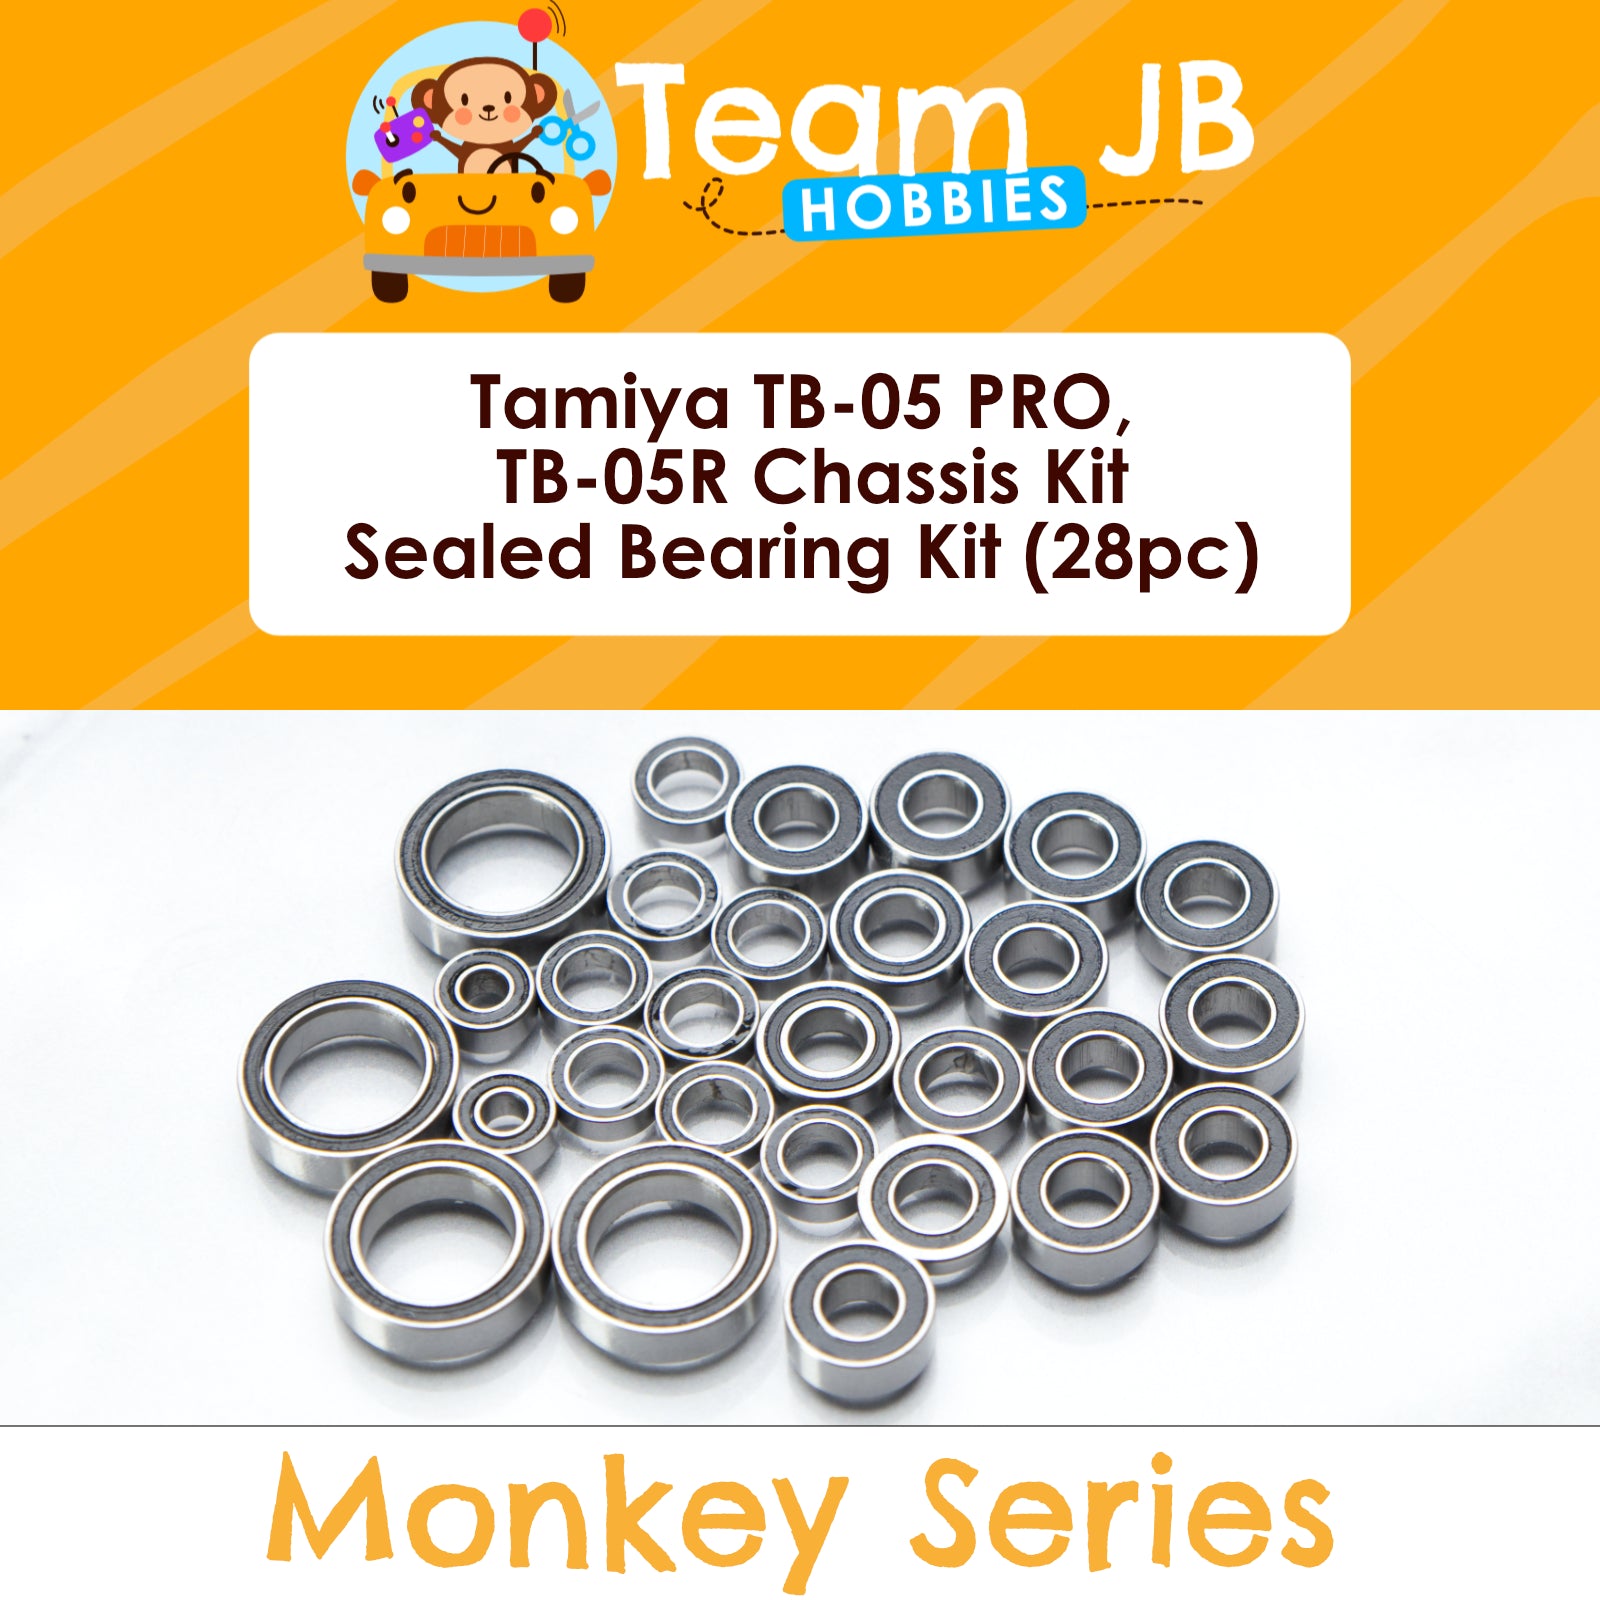 Tamiya TB-05 PRO, TB-05R Chassis Kit - Sealed Bearing Kit